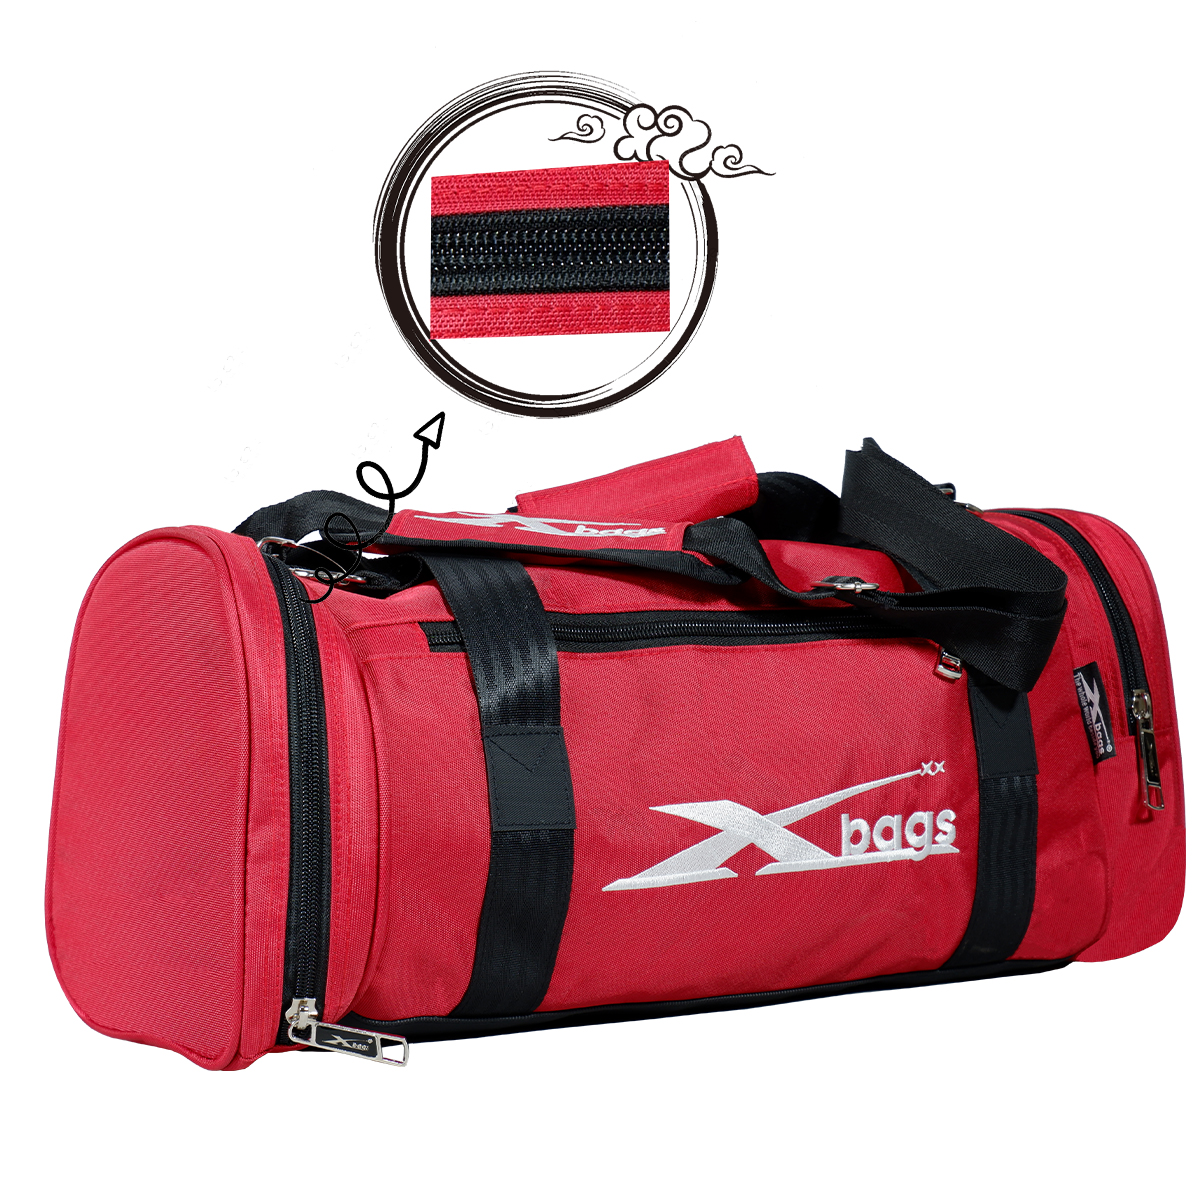 Túi trống thể thao nhỏ gọn XBAGS Xb 6002 túi du lịch có ngăn đựng giày